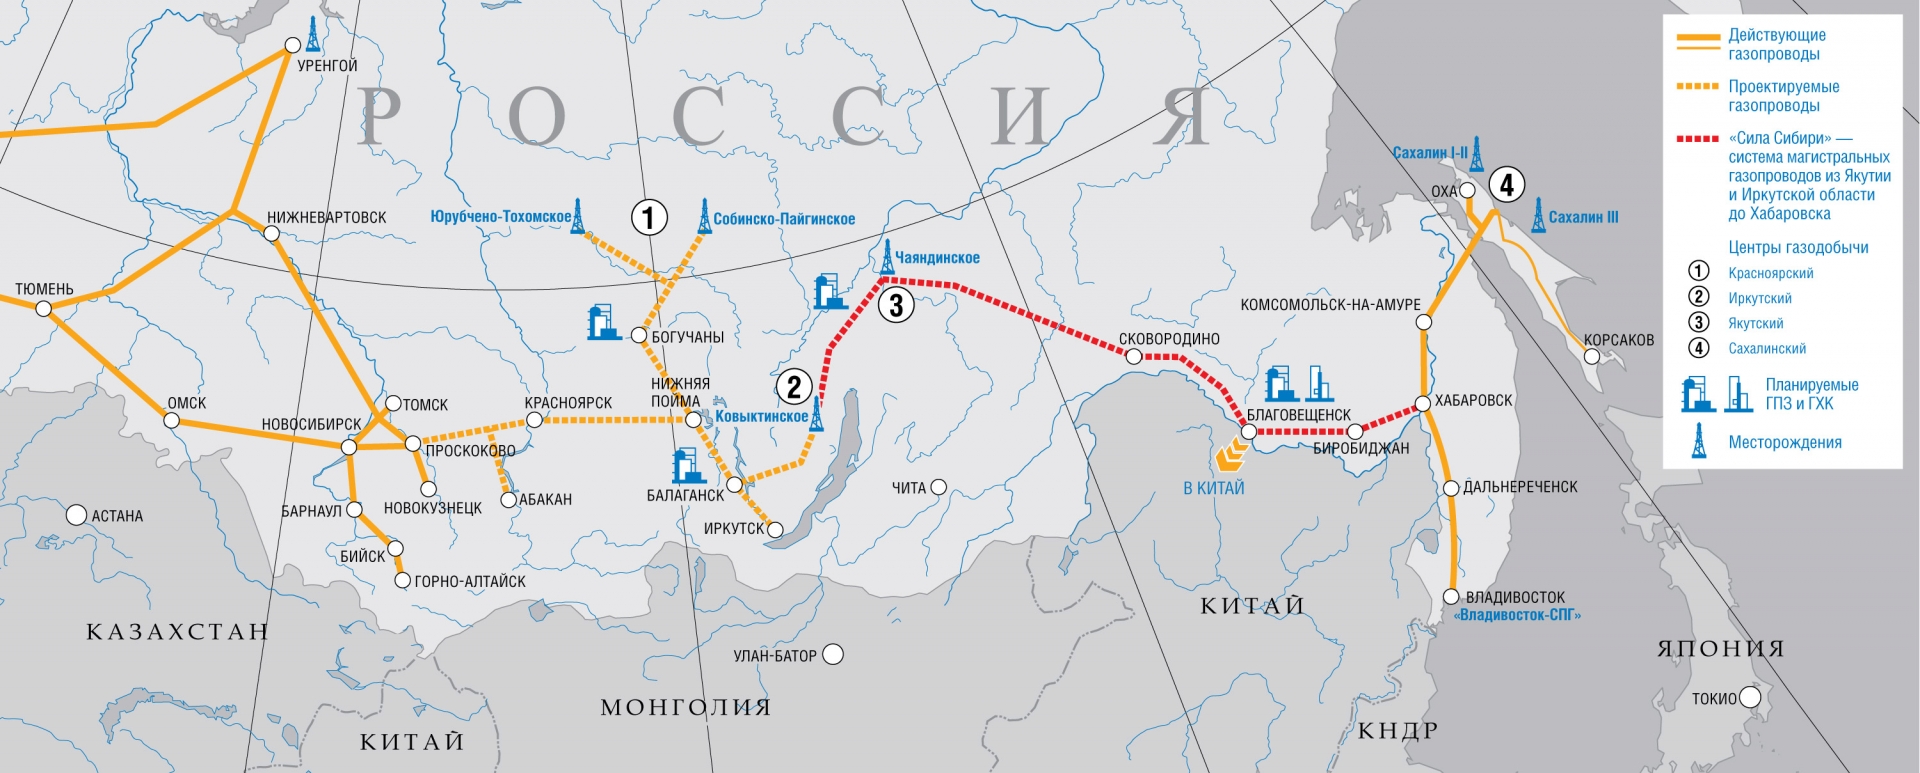 Монголия не получит российский газопровод 